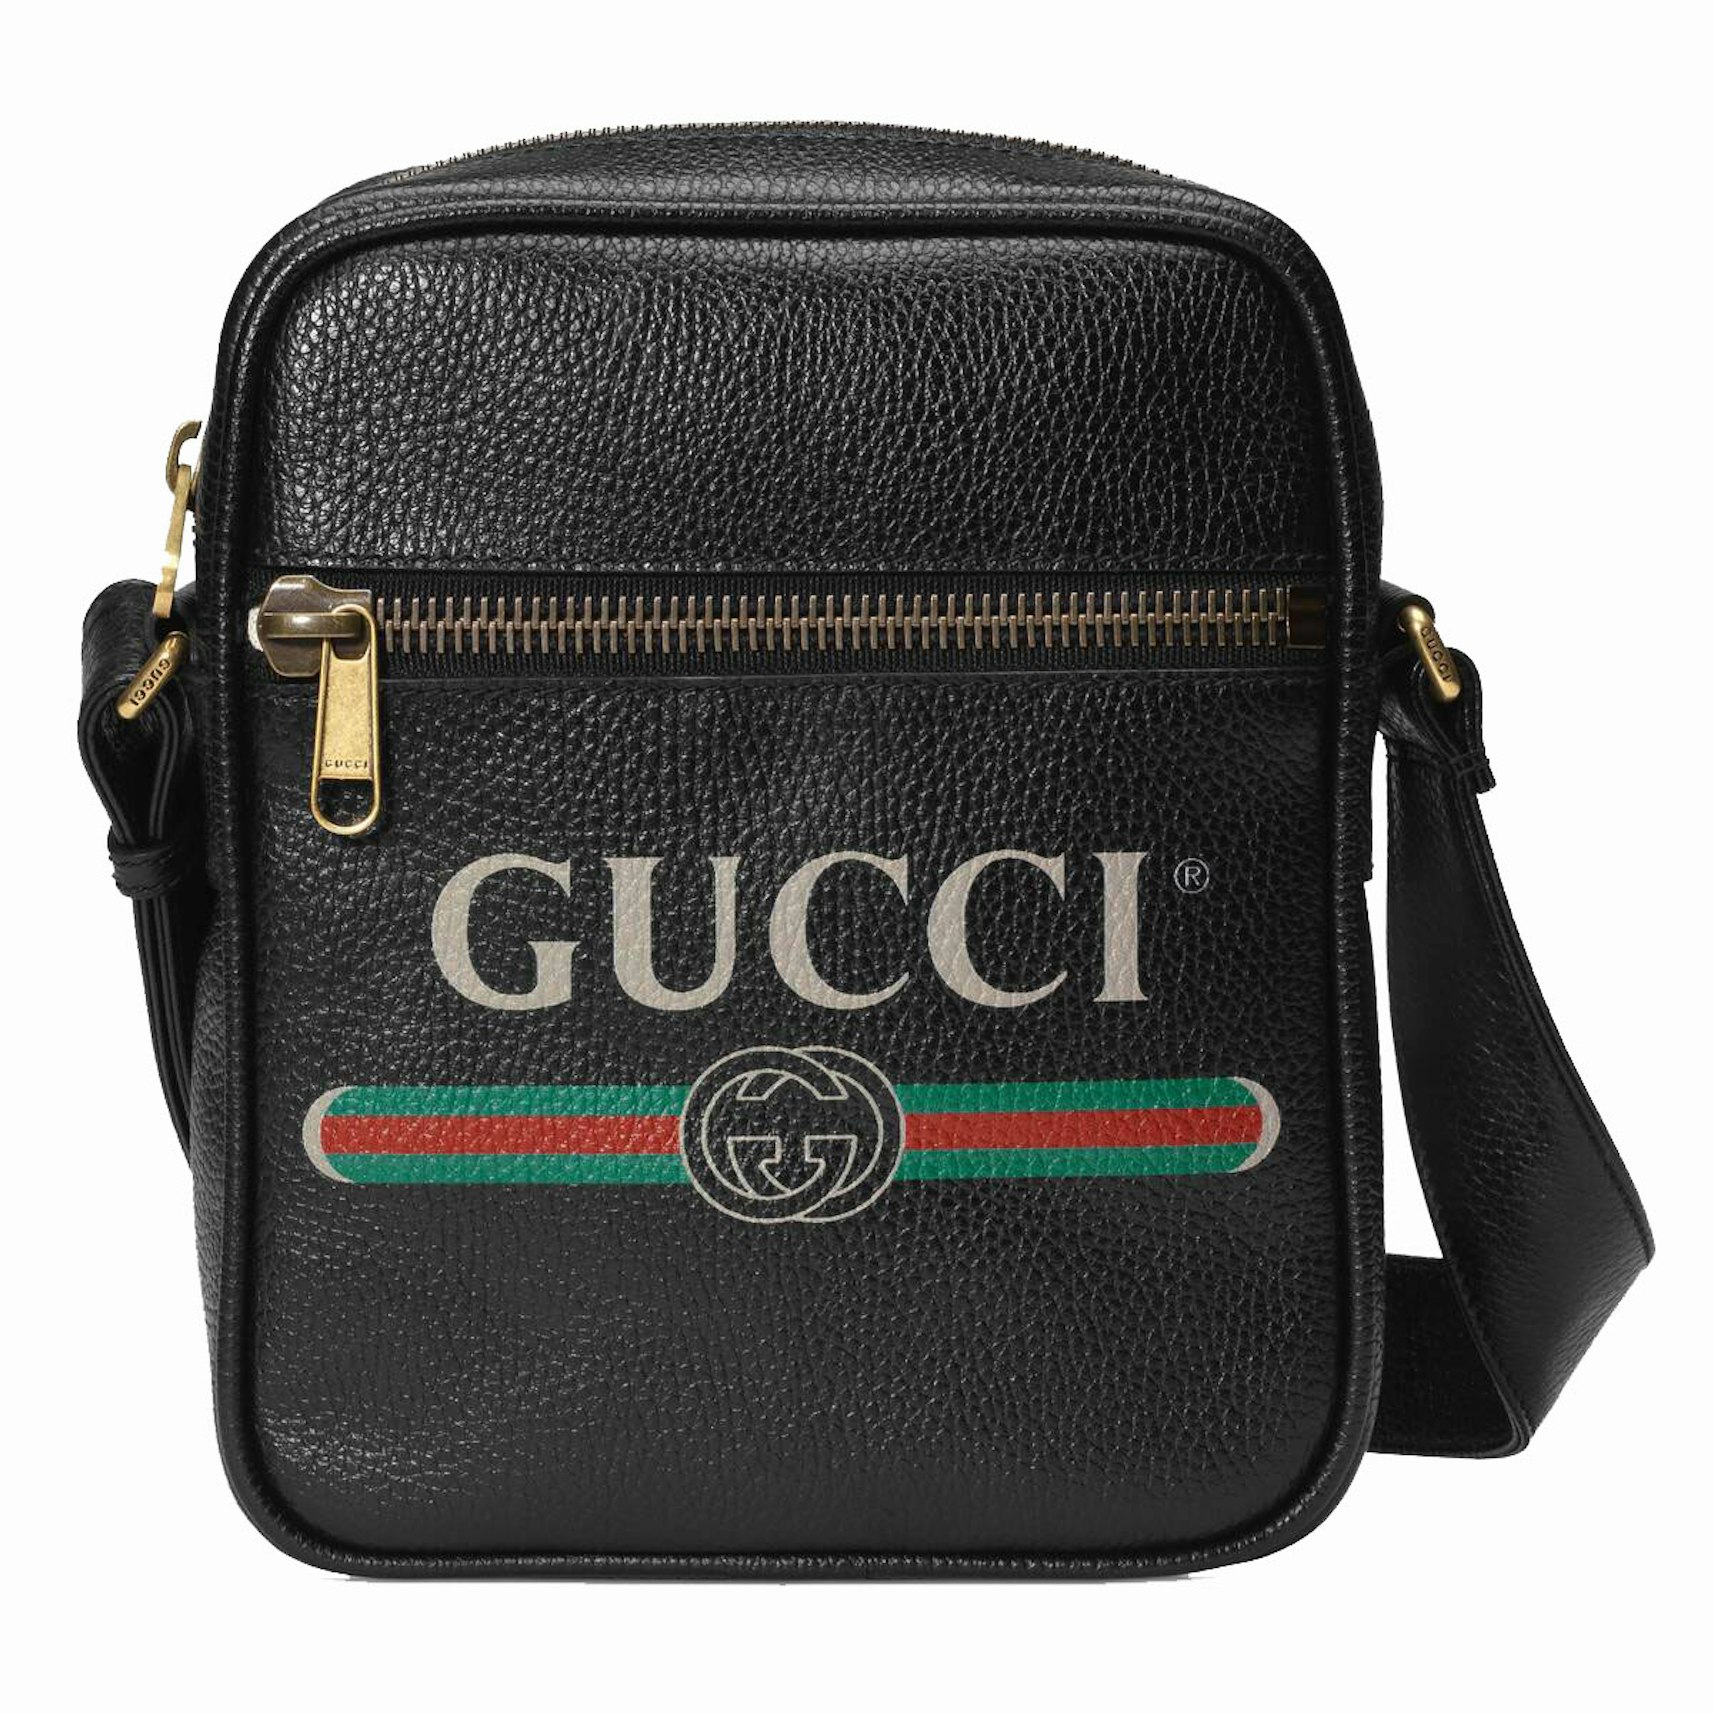 Gucci Print Messenger Bag Vintage Logo Black in Leather Brass - US